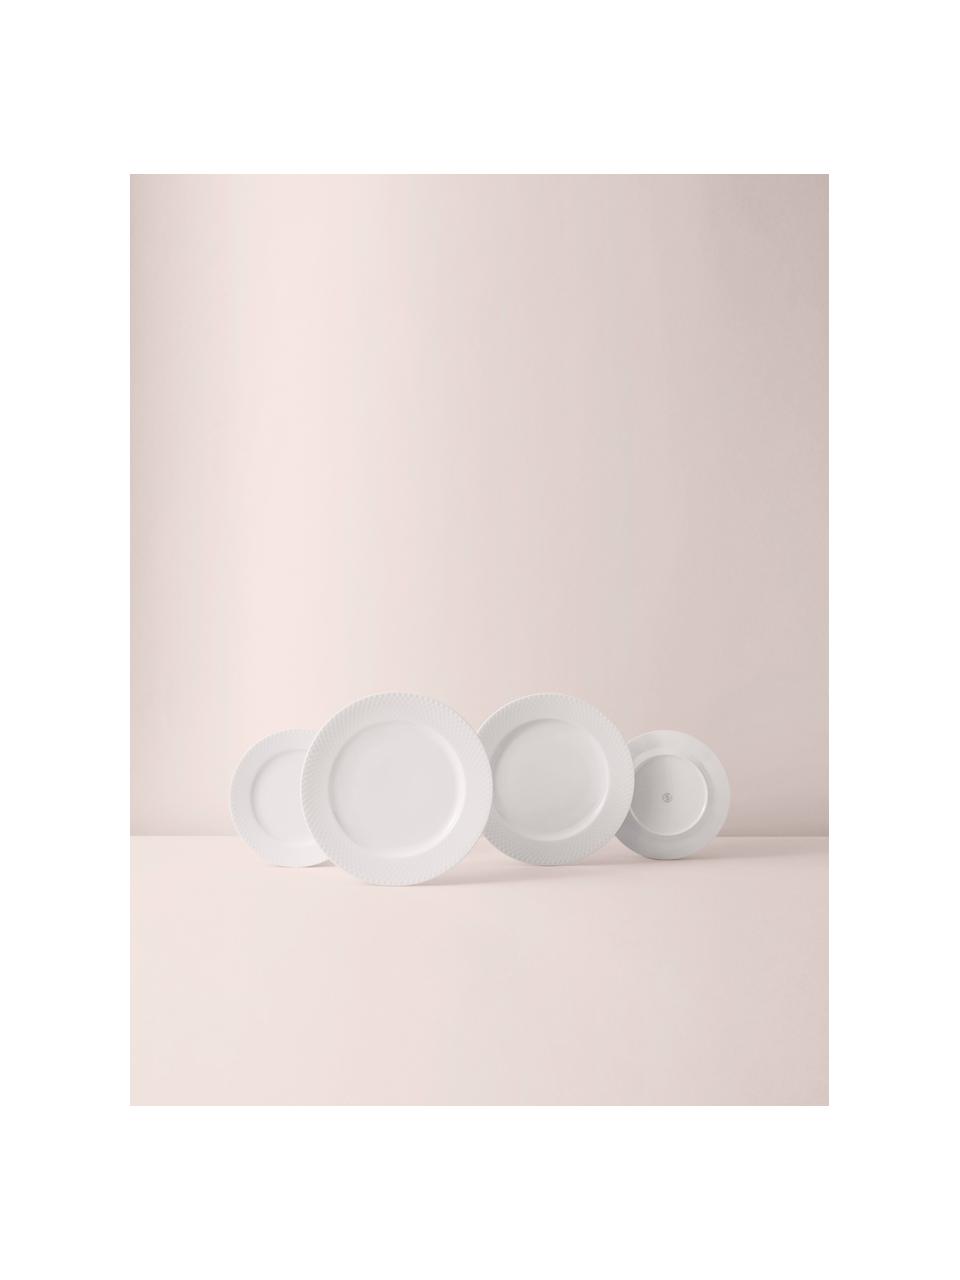 Assiettes plates en porcelaine artisanales Rhombe, 4 pièces, Porcelaine, Blanc, Ø 27 cm